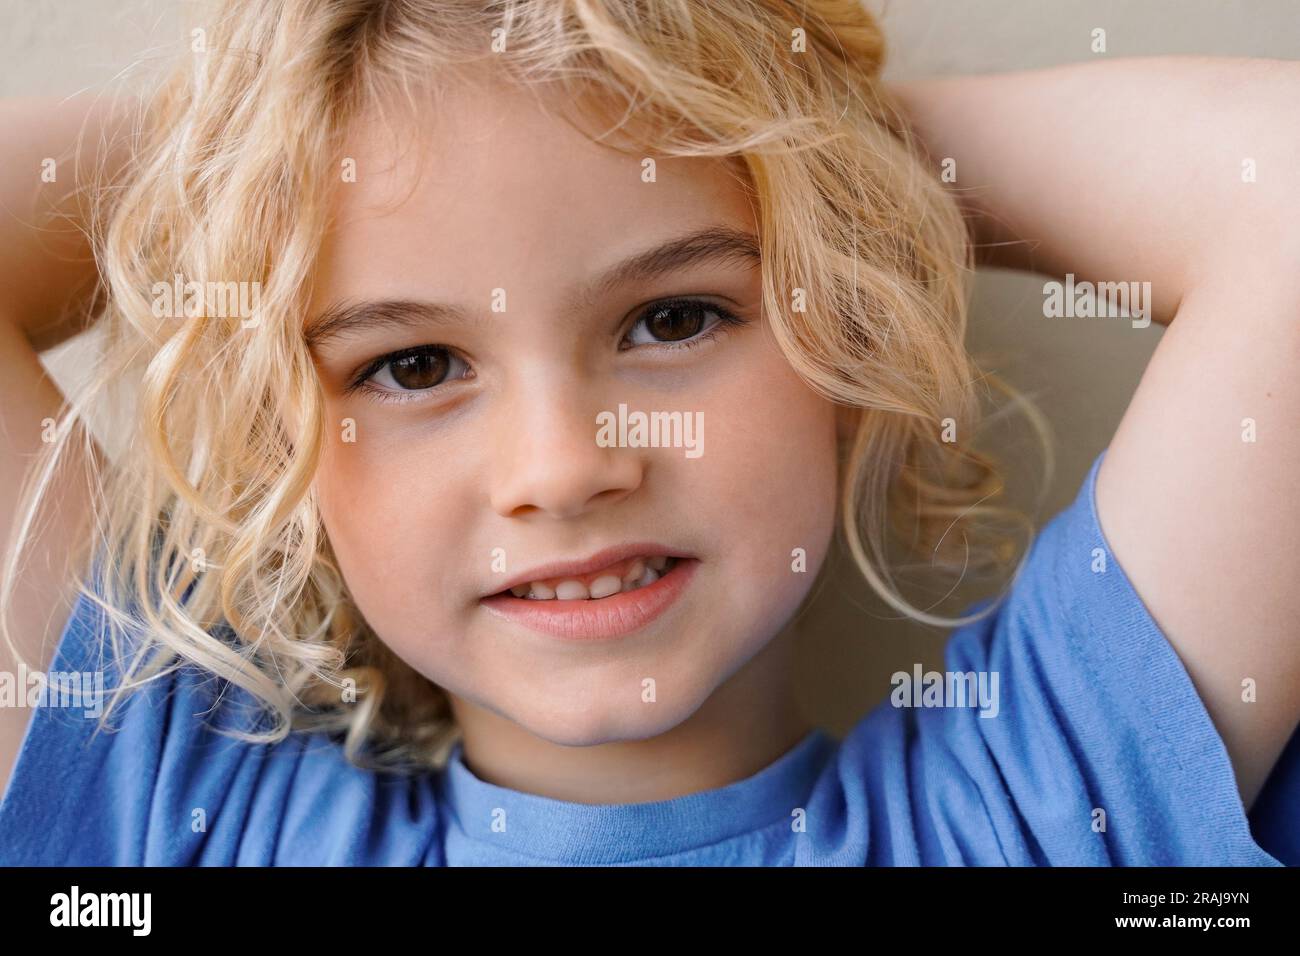 Foto autentica di un bambino sorridente sulla fotocamera - ritratti di persone reali Foto Stock